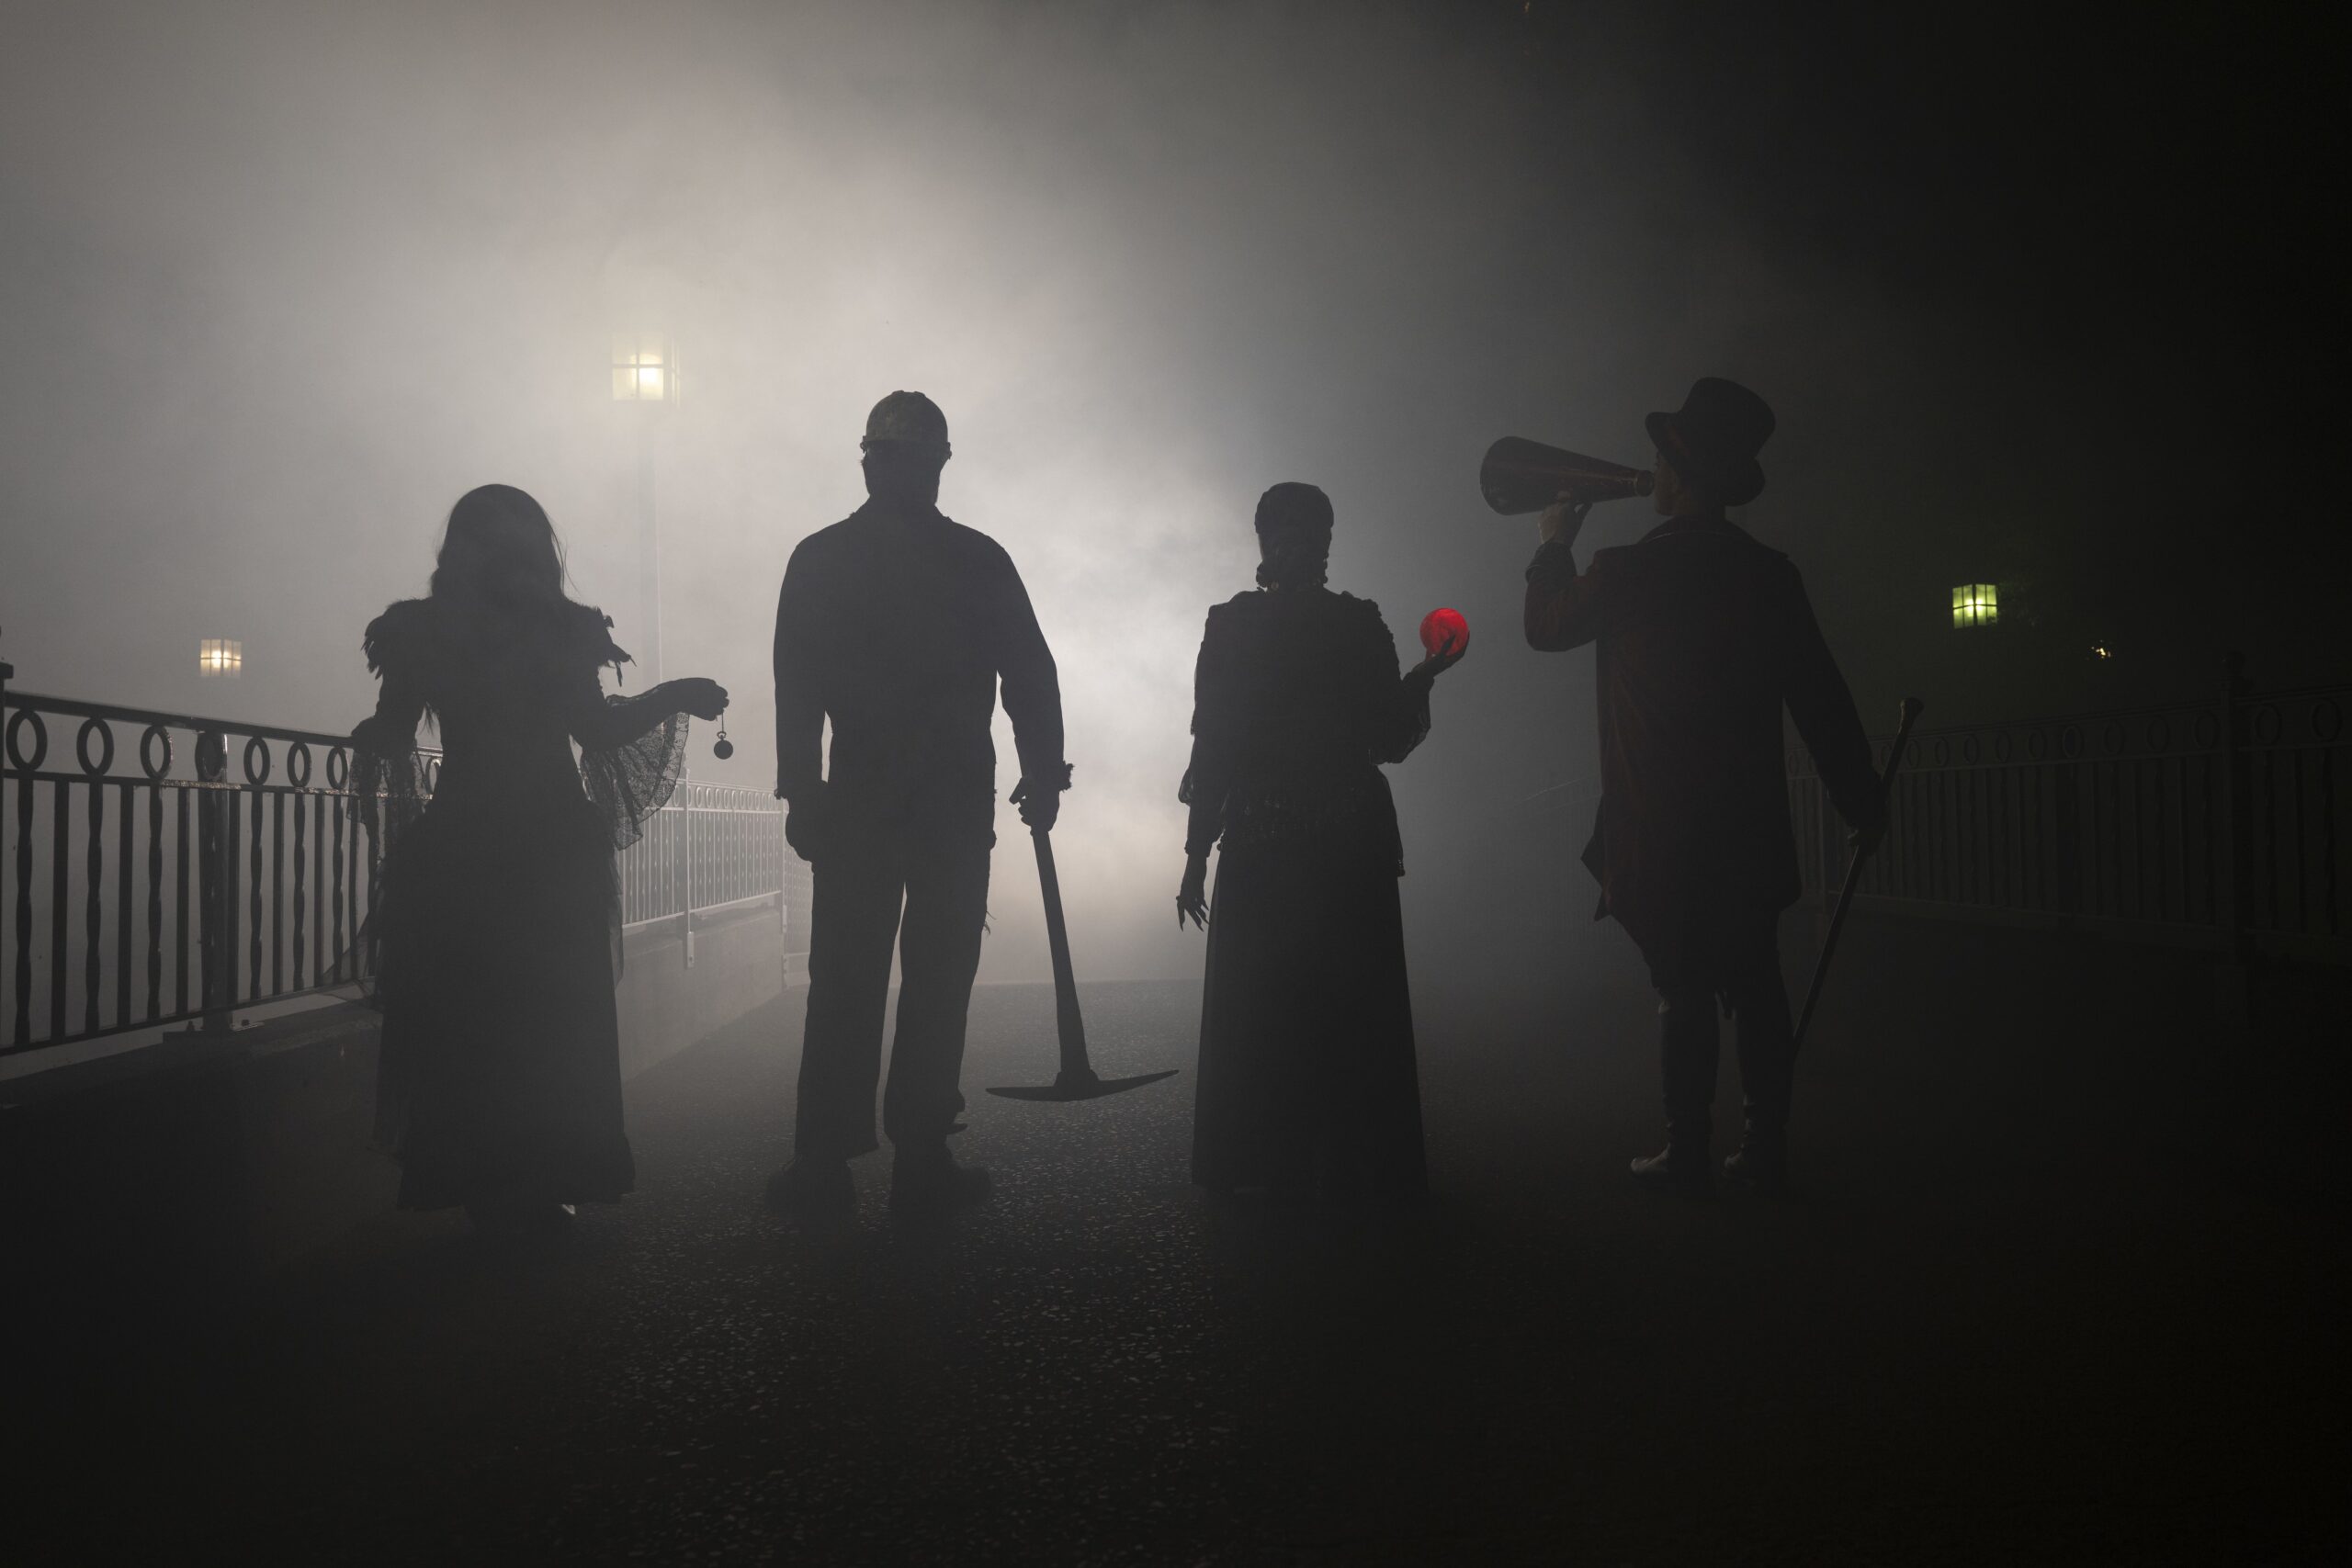 Hersheypark to debut Dark Nights to expand Hersheypark Halloween